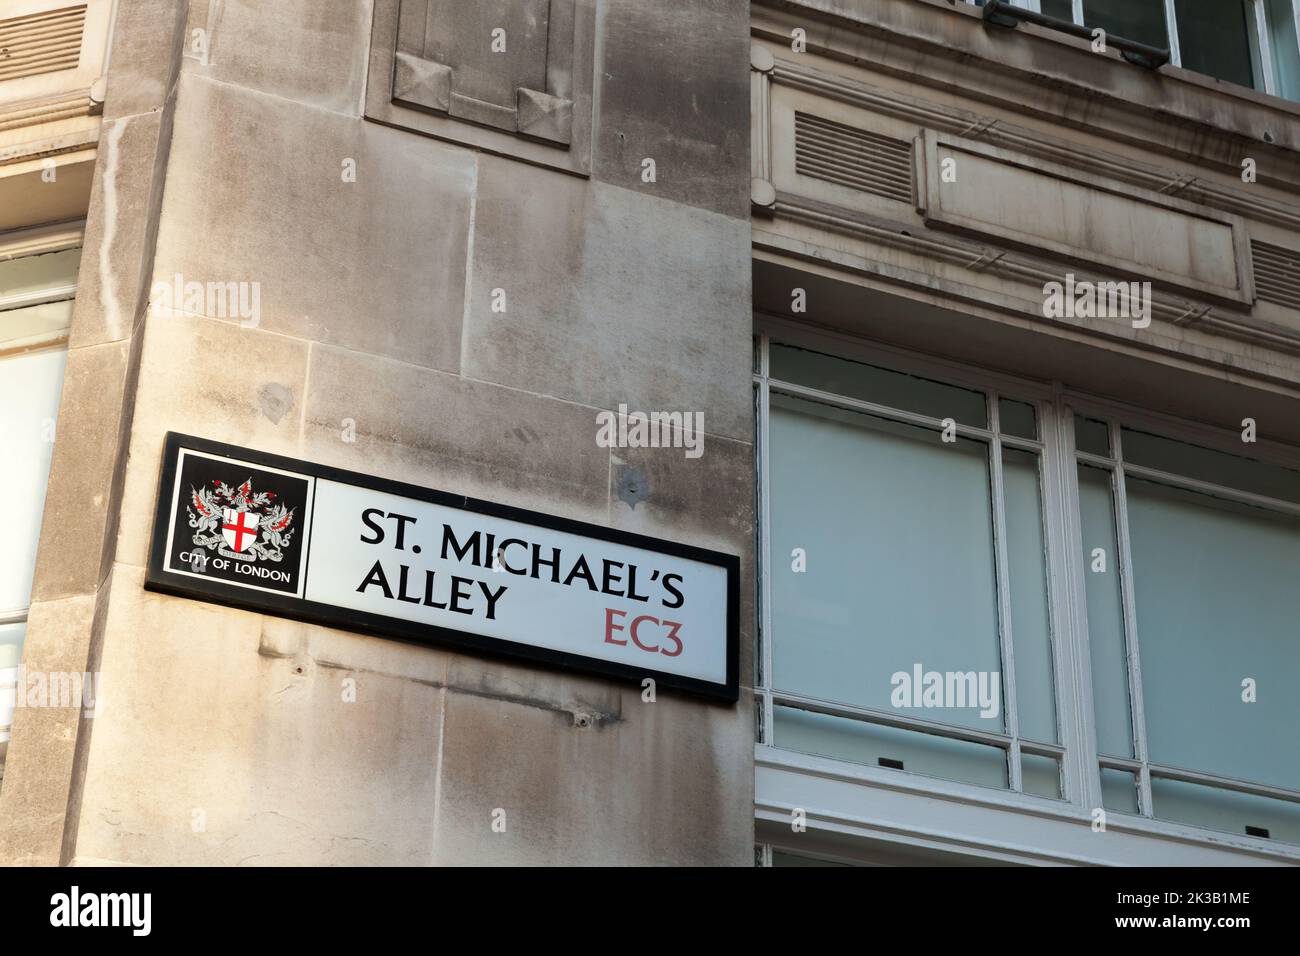 Londres, Royaume-Uni - 25 avril 2019: Panneau de rue de Londres. Rue St. Michael Alley, ville de Londres Banque D'Images